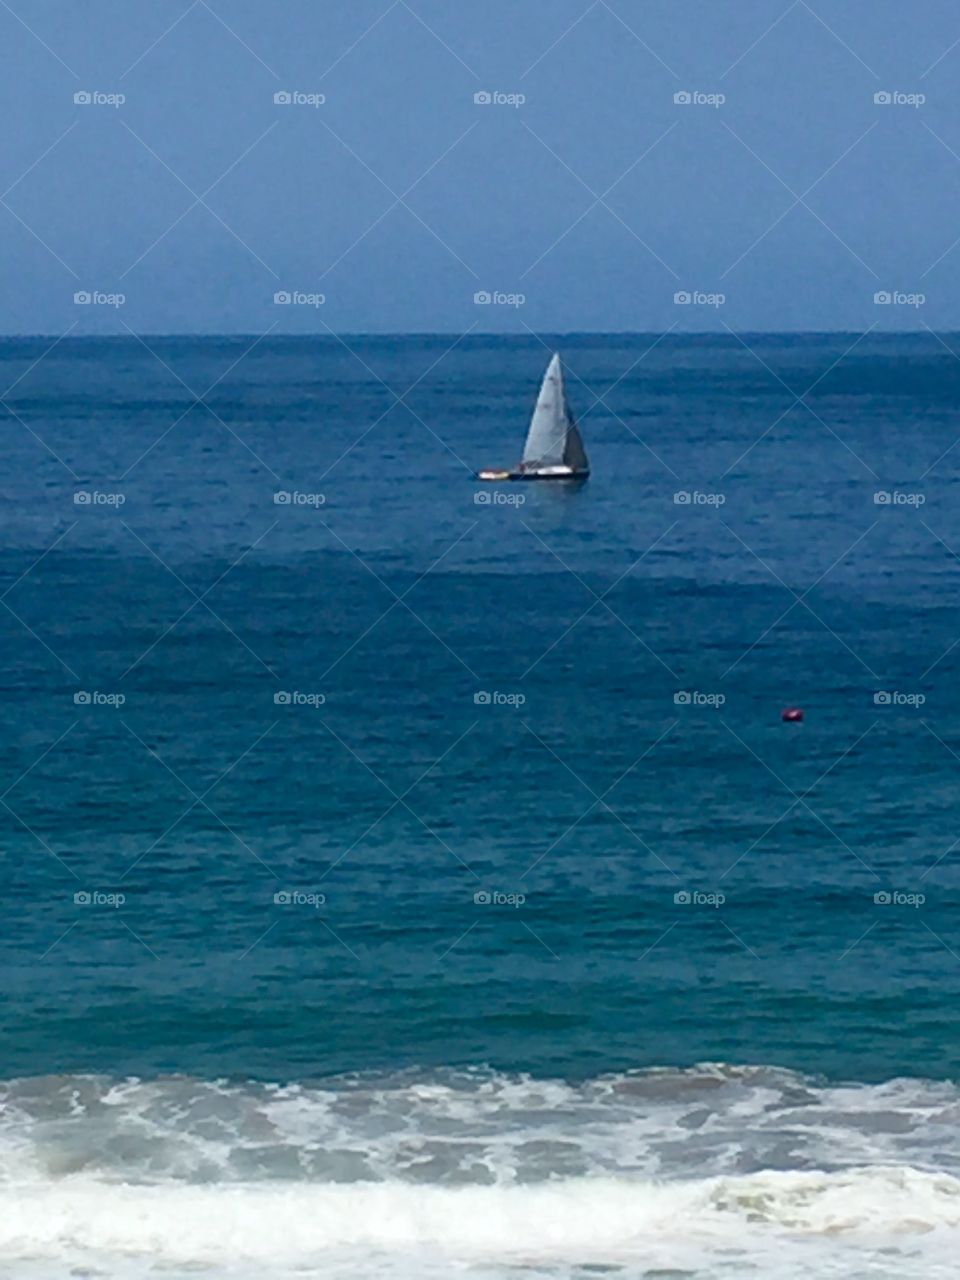 Sailing the Ocean Blue